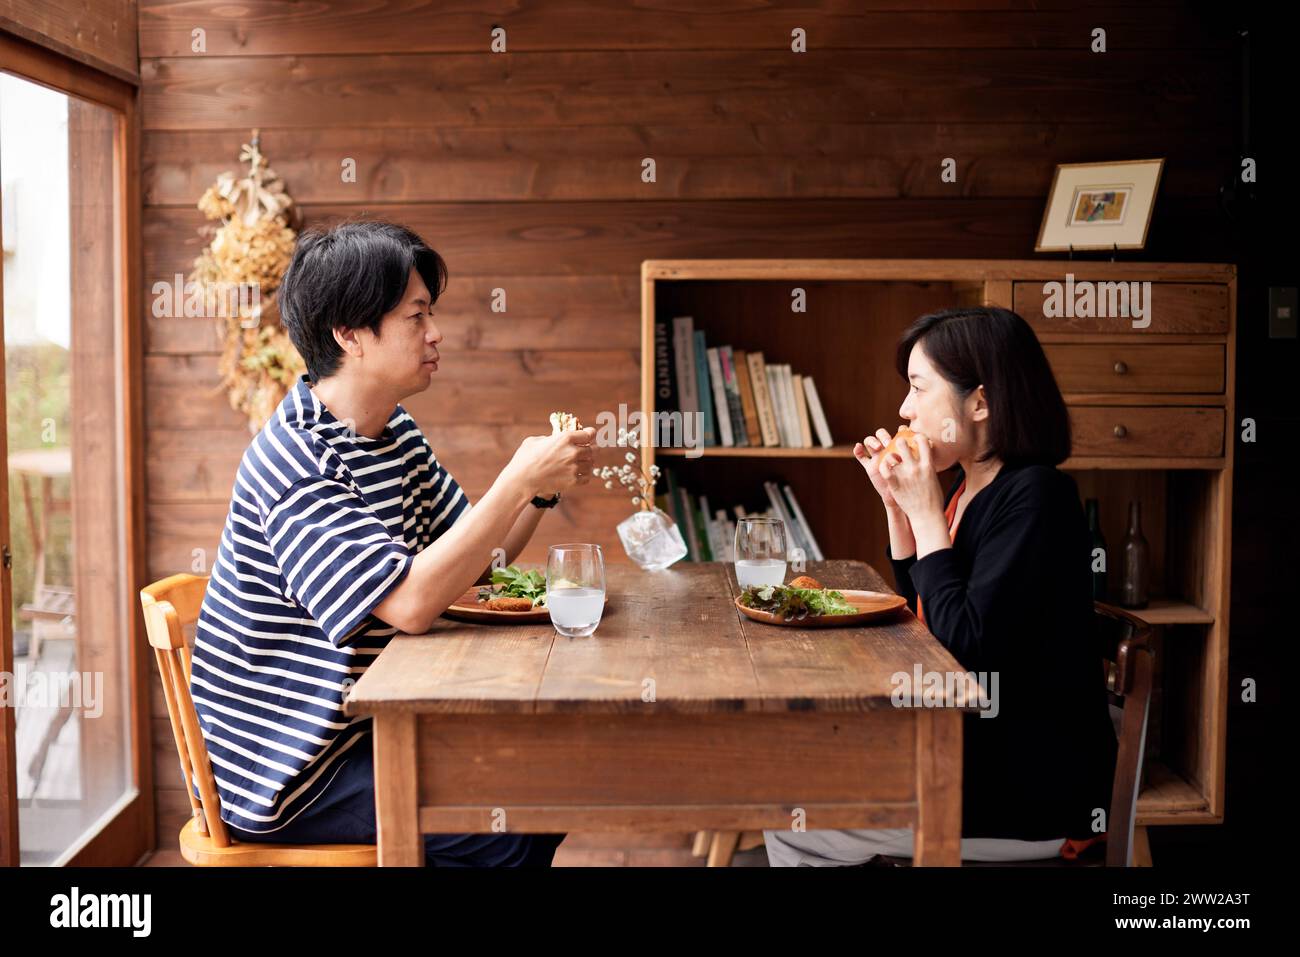 Un homme et une femme assis à une table mangeant de la nourriture Banque D'Images